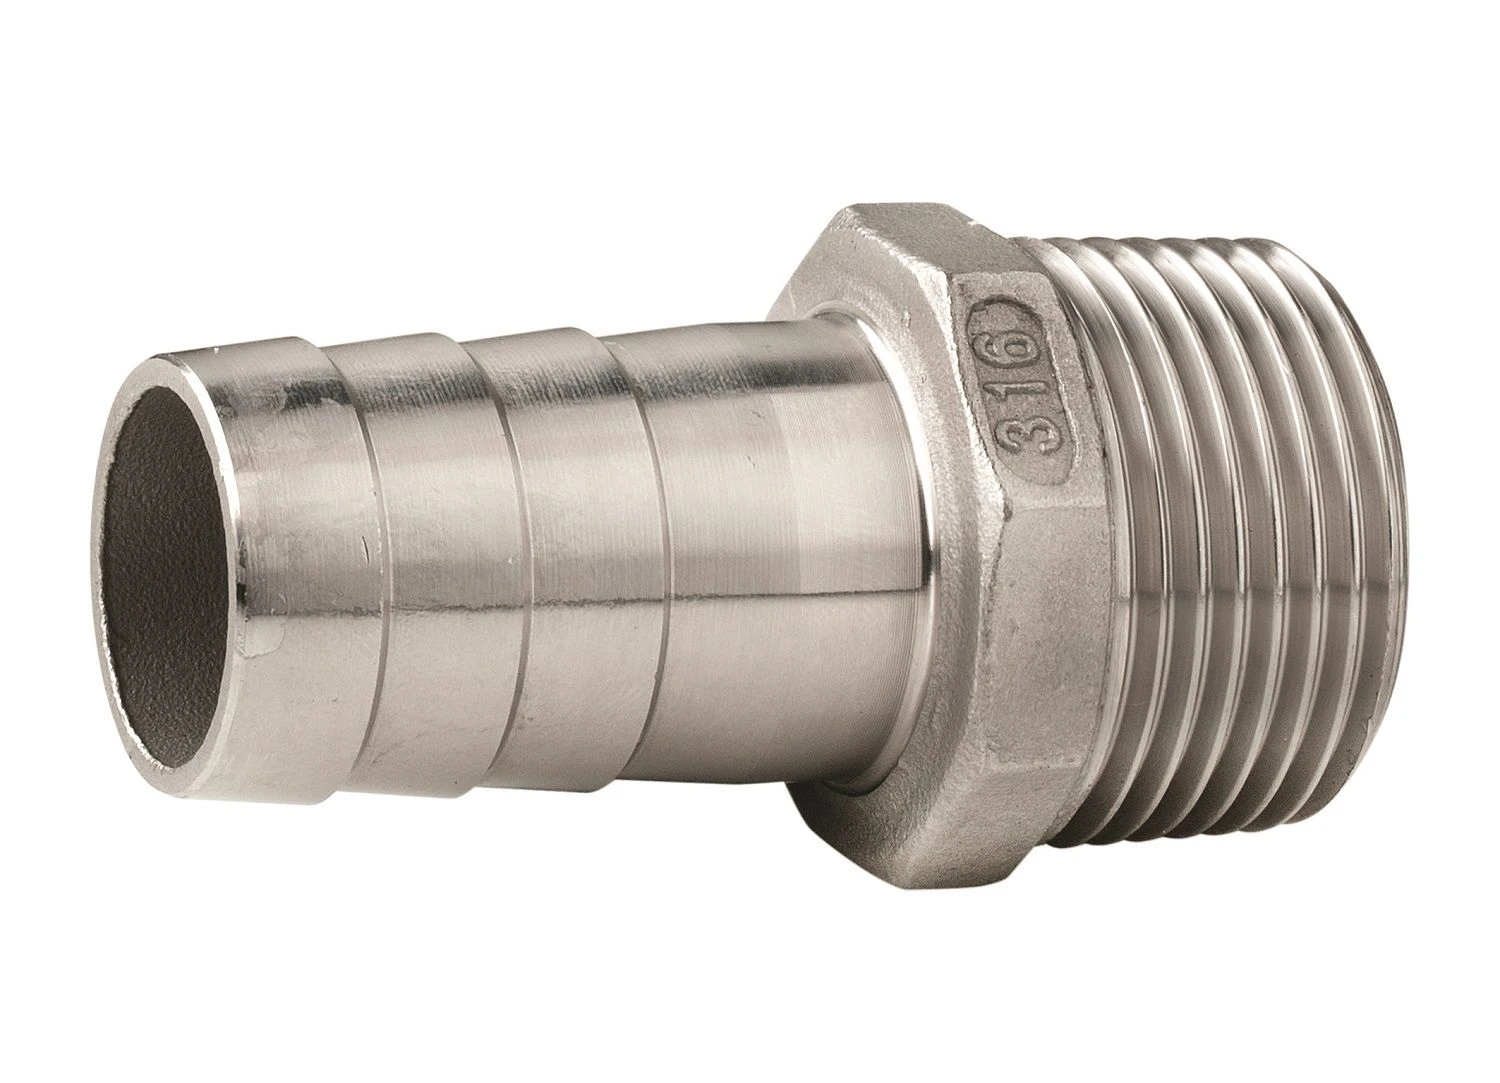 Screw-in hose connector, M8x0.75, for hose I.D. 6 mm, AF 12